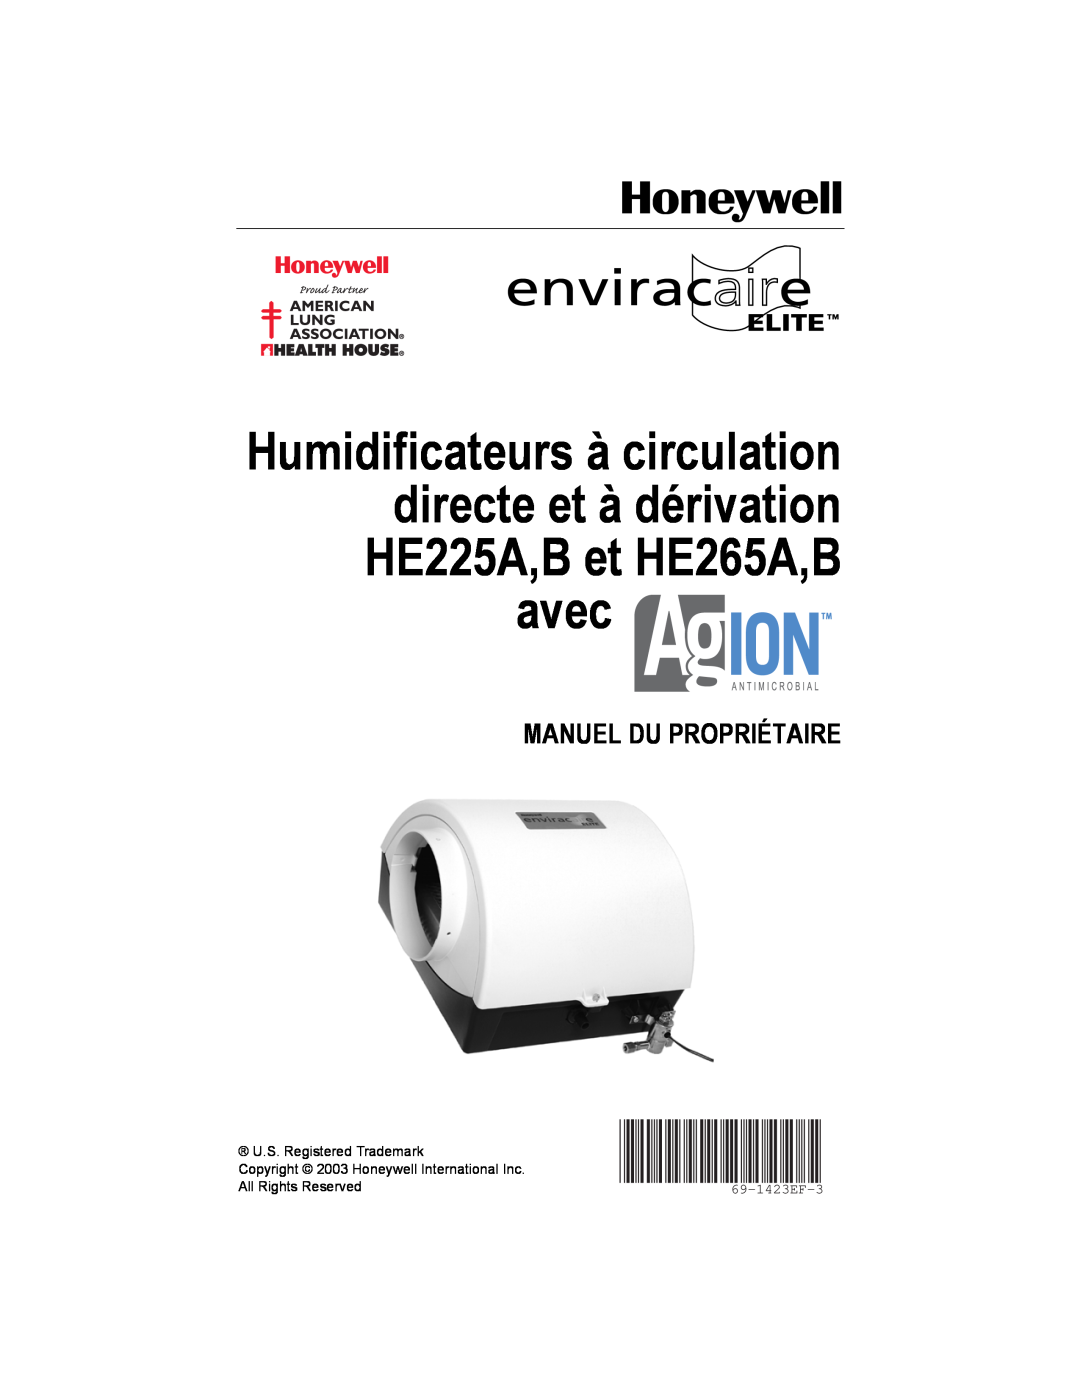 Honeywell B, HE225A, HE265A manual Manuel Du Propriétaire, 69-1423EF-3 